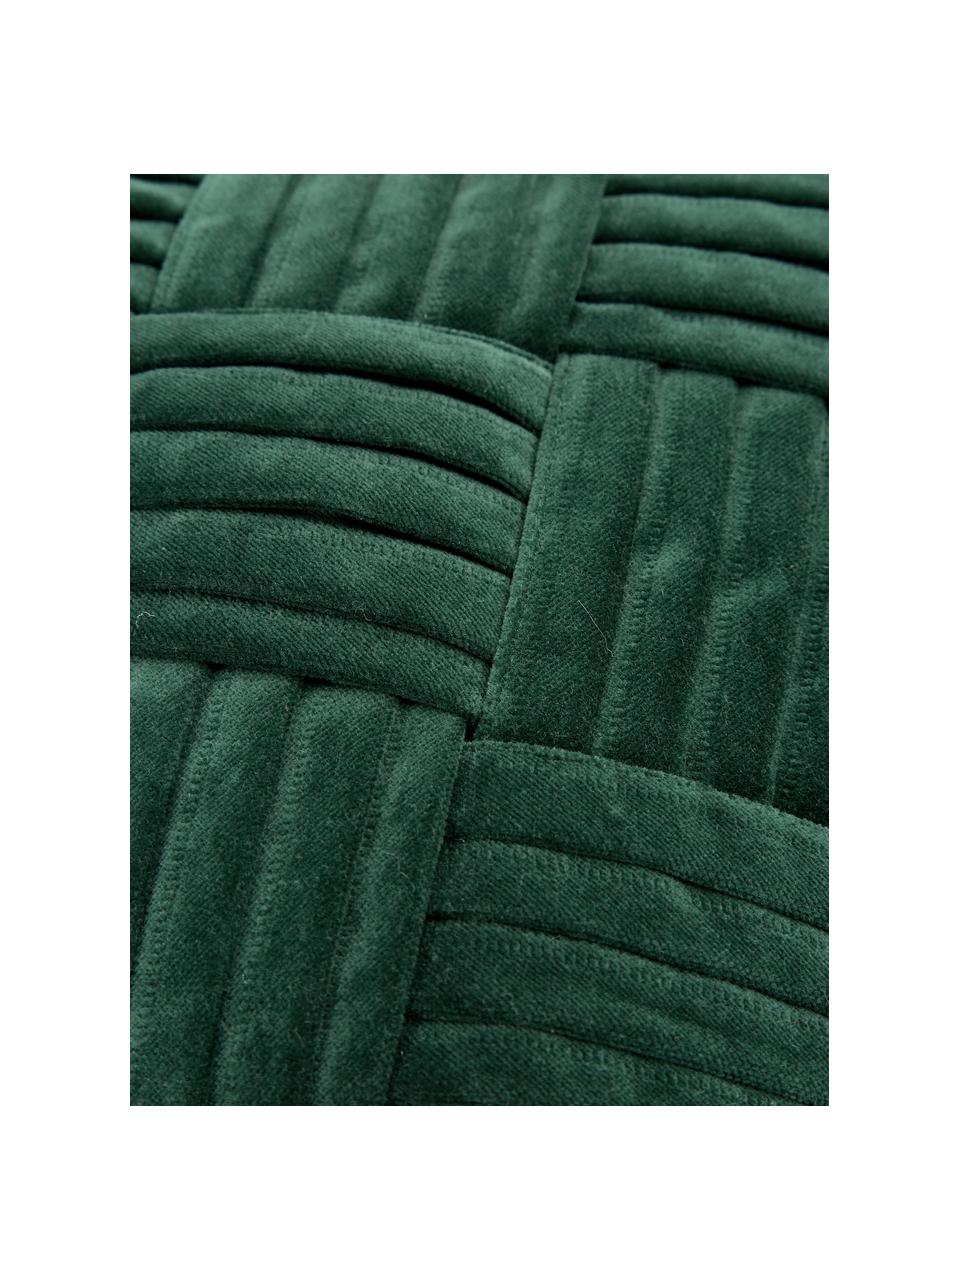 Federa arredo in velluto verde scuro con motivo a rilievo Sina, Velluto (100% cotone), Verde, Larg. 30 x Lung. 50 cm